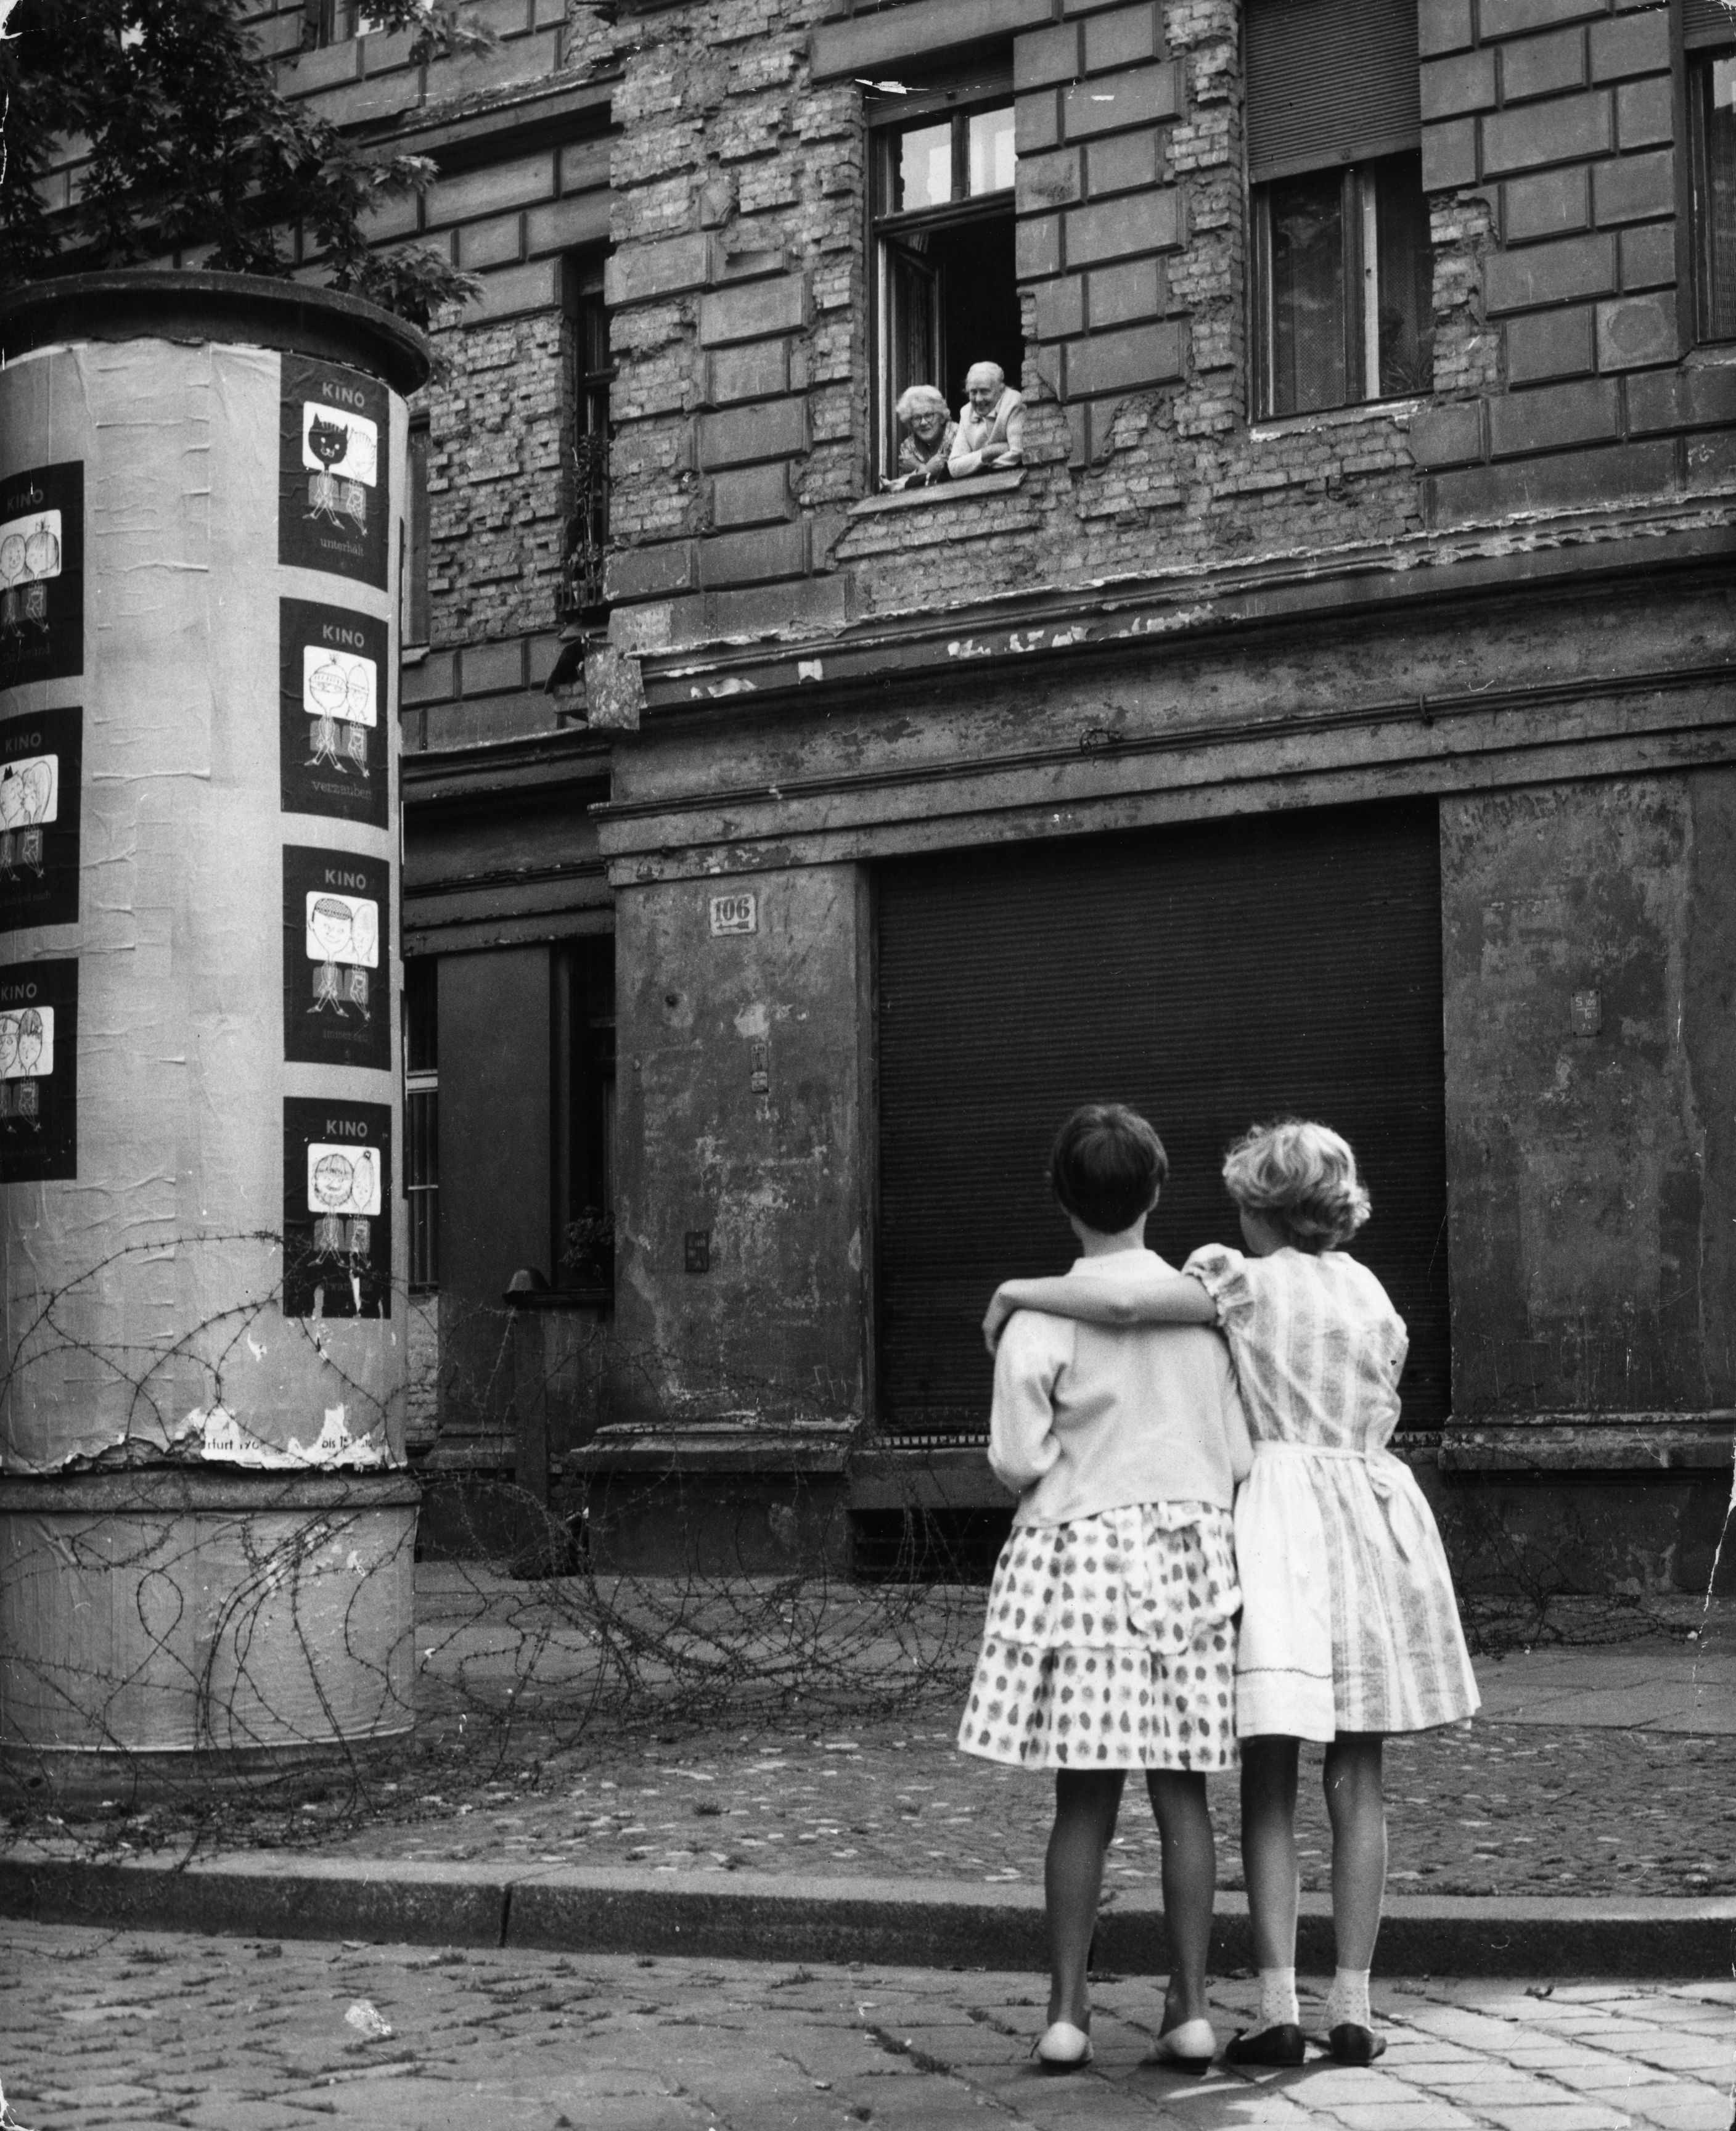 Il 14 agosto 1961, pochi giorni dopo la costruzione del muro, due bambine in una strada della parte occidentale parlano con i nonni che si trovano alla finestra di casa loro nel settore orientale. Vengono divisi palazzi, scuole e addirittura cimiteri. Numerose famiglie si trovano spaccate tra le due parti della città